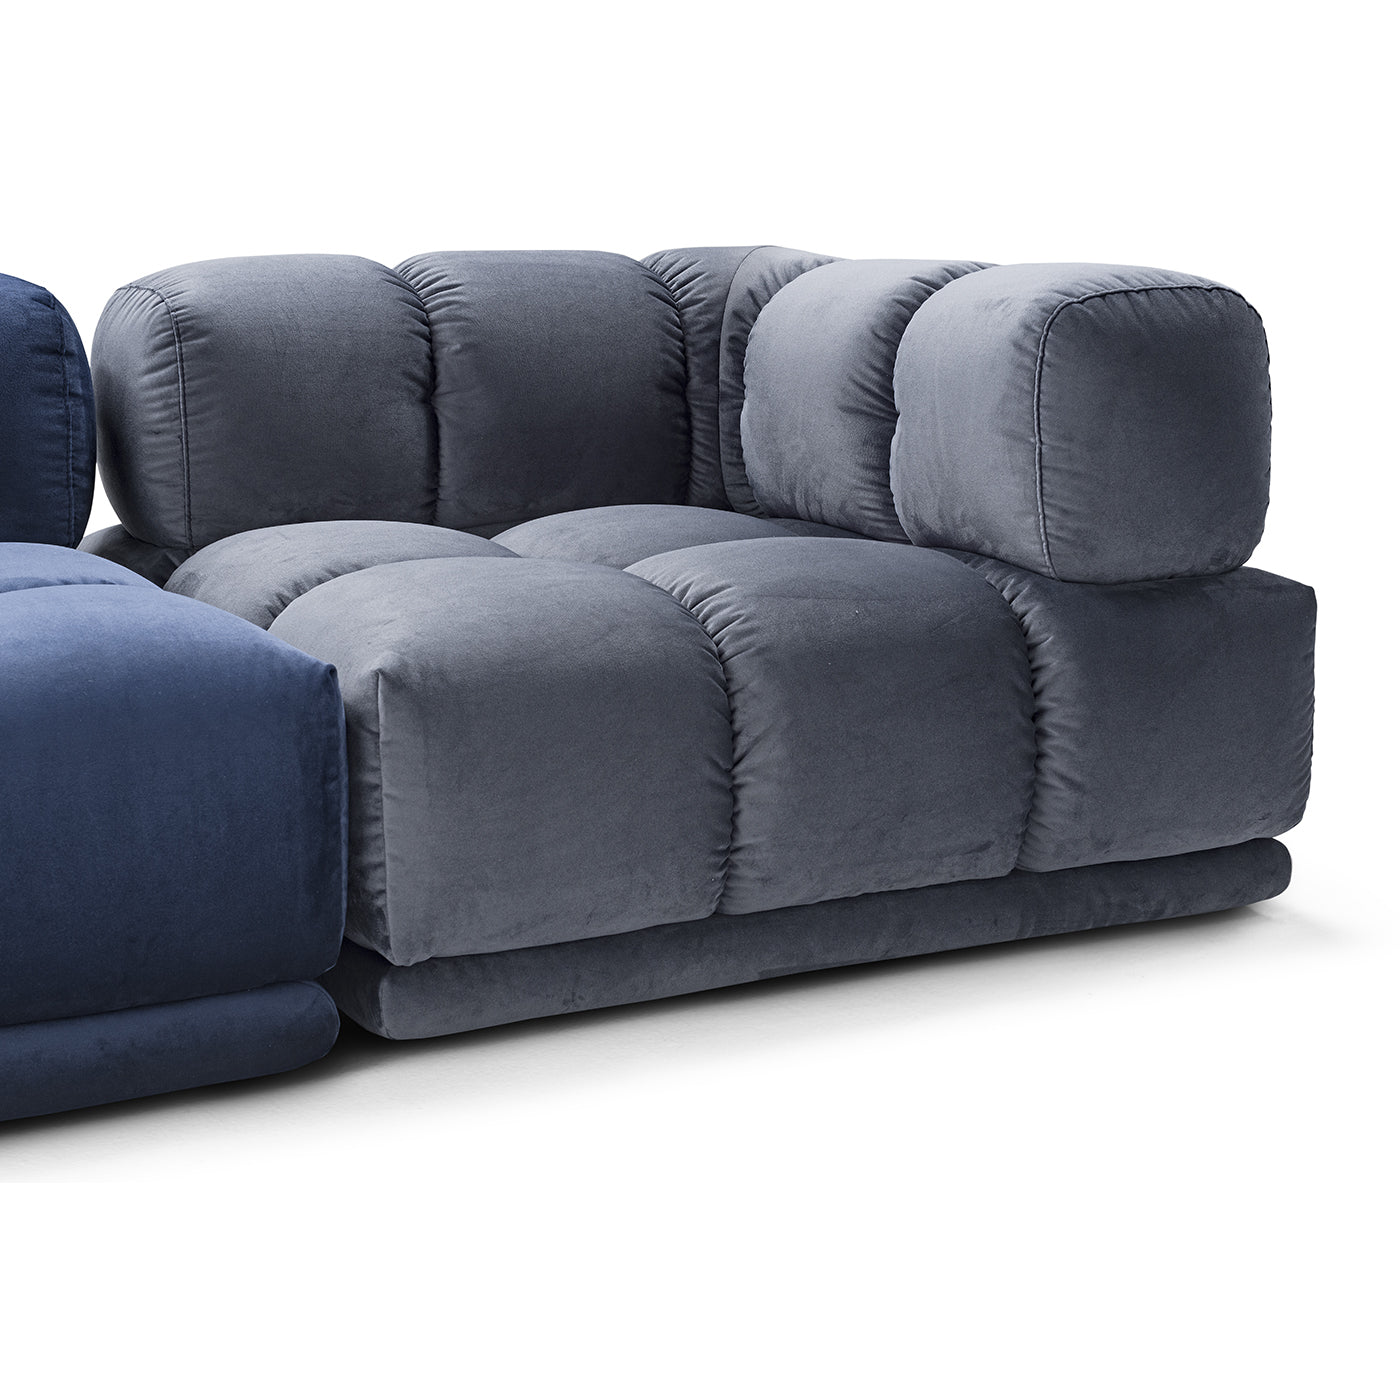 Sacai Modular Gray and Blue Sofa - Alternative view 5